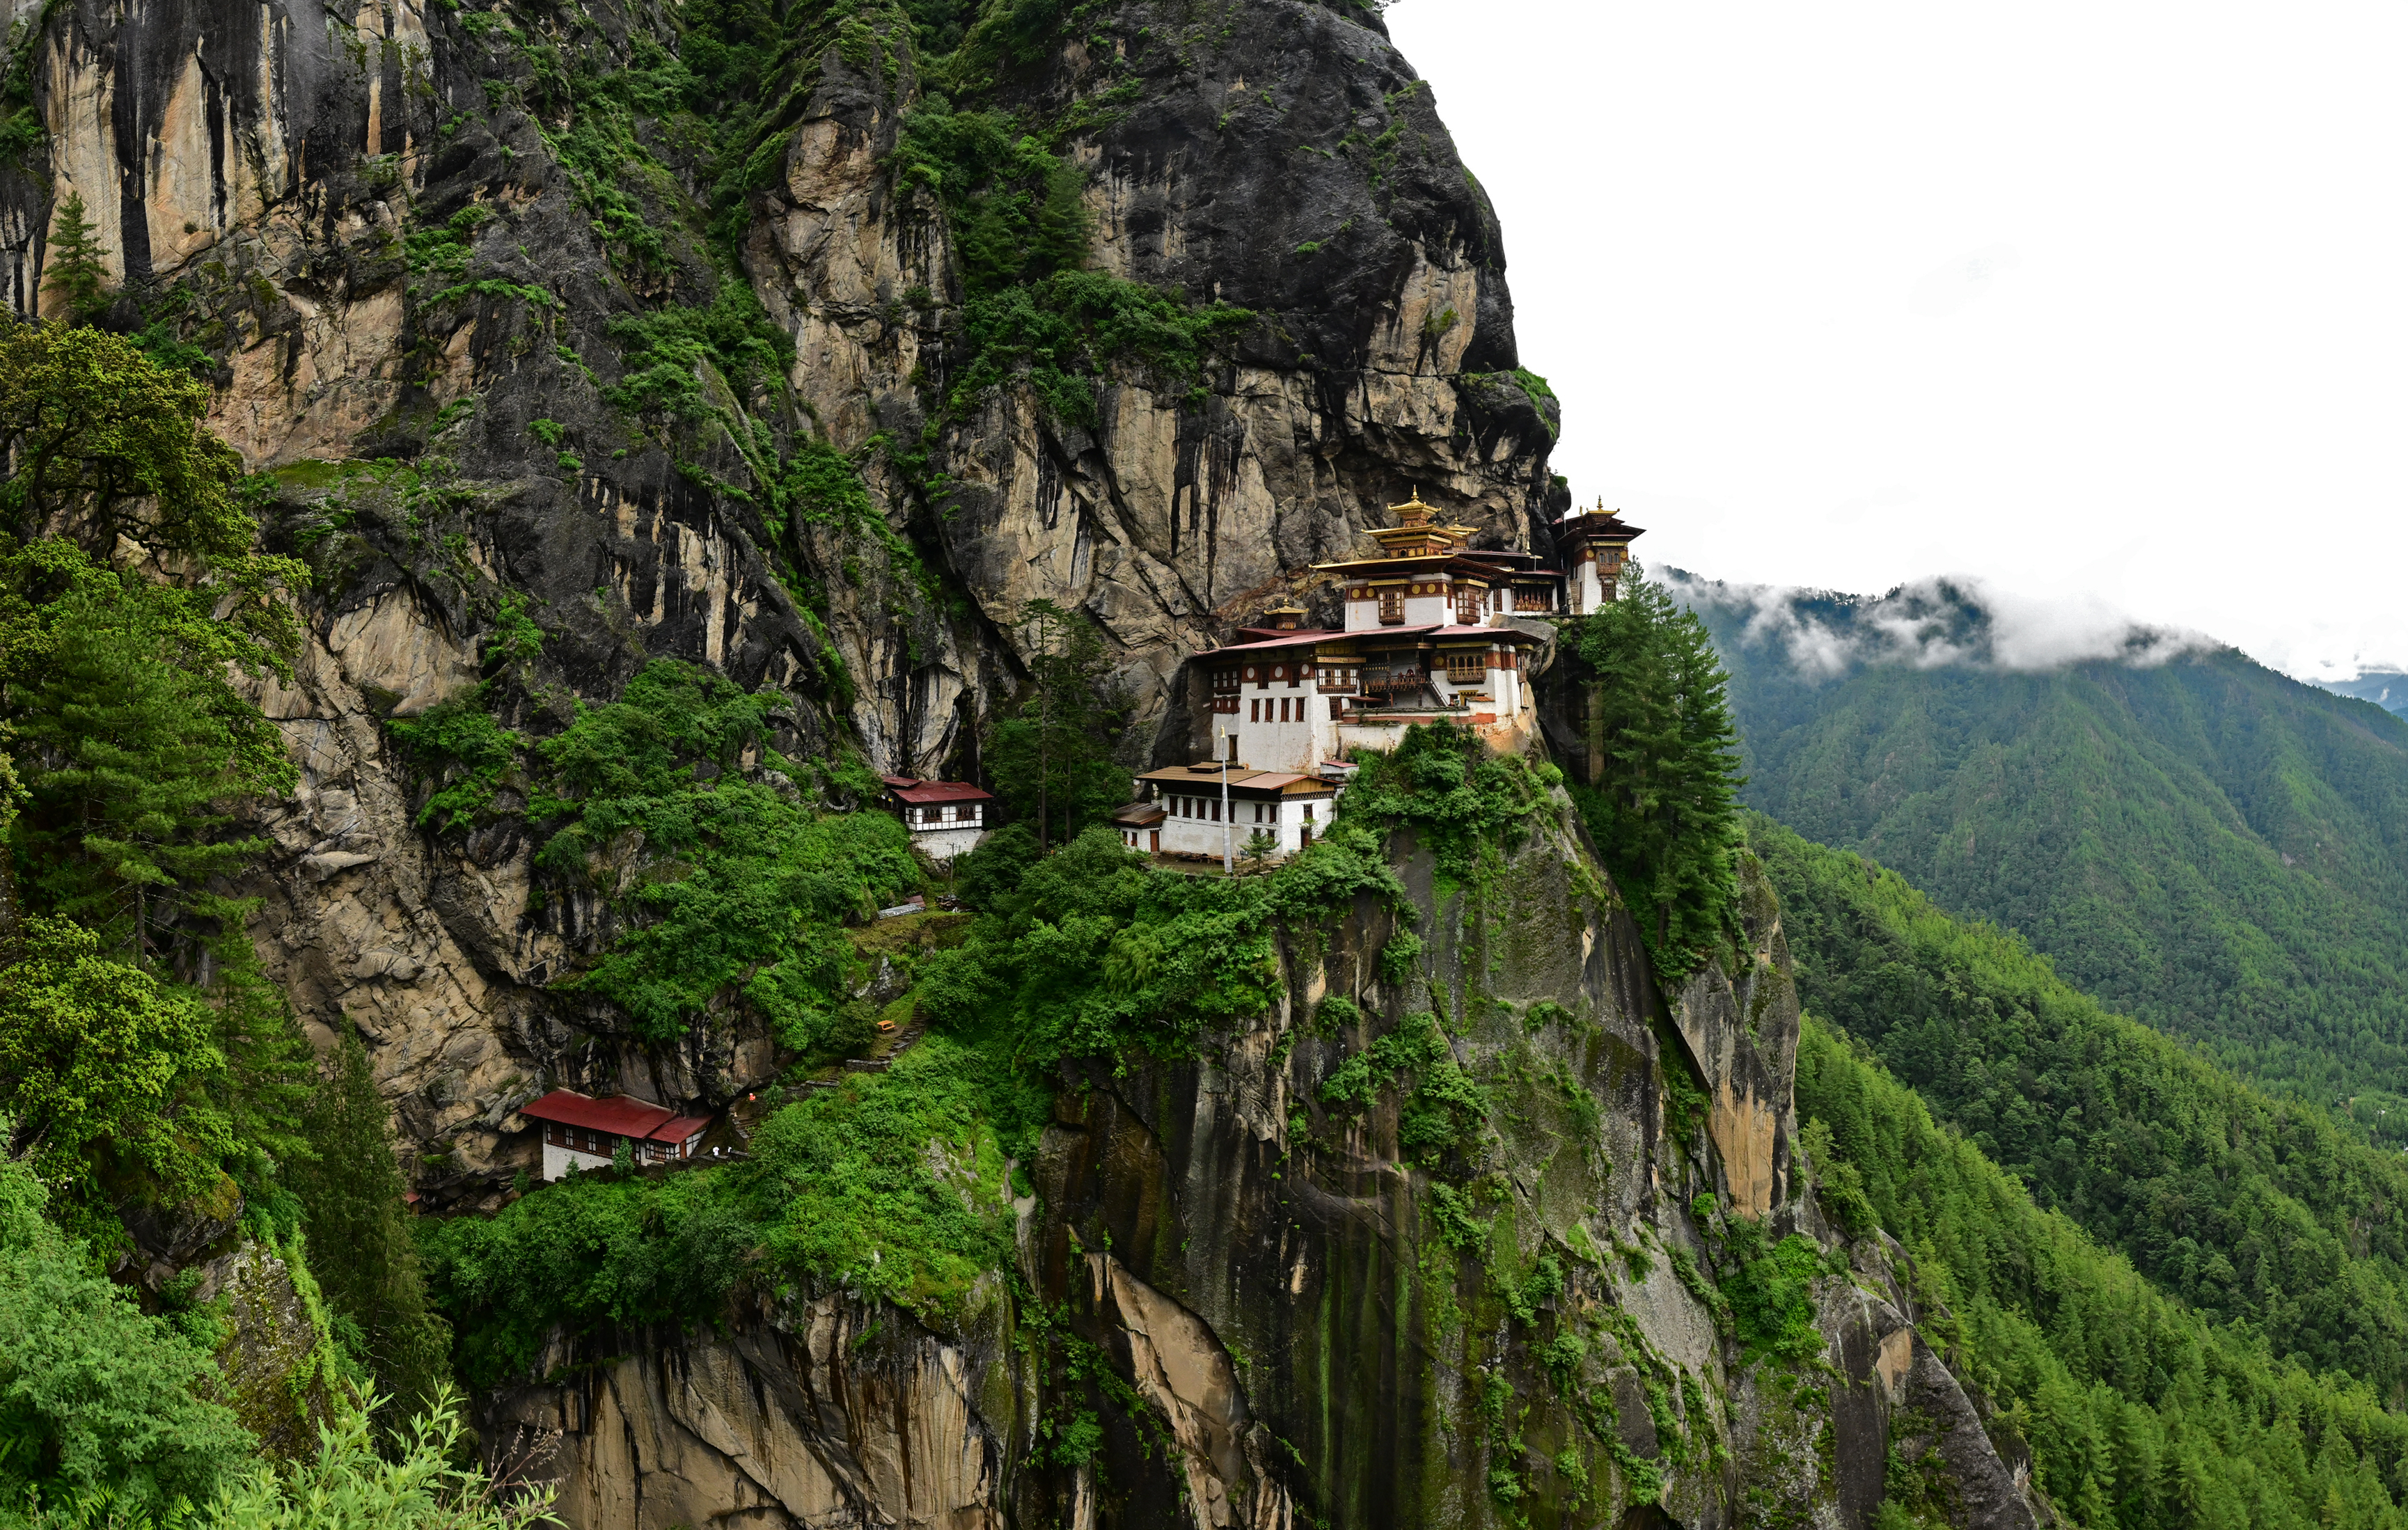 부탄 사람들의 정신적 지주 구실을 하는 탁상 곰파 사원. 거대한 바위 절벽에 아슬아슬하게 걸쳐 있다. 부탄 사람들은 이 사원에서 부탄과 부탄의 불교가 비롯됐다고 믿는다.